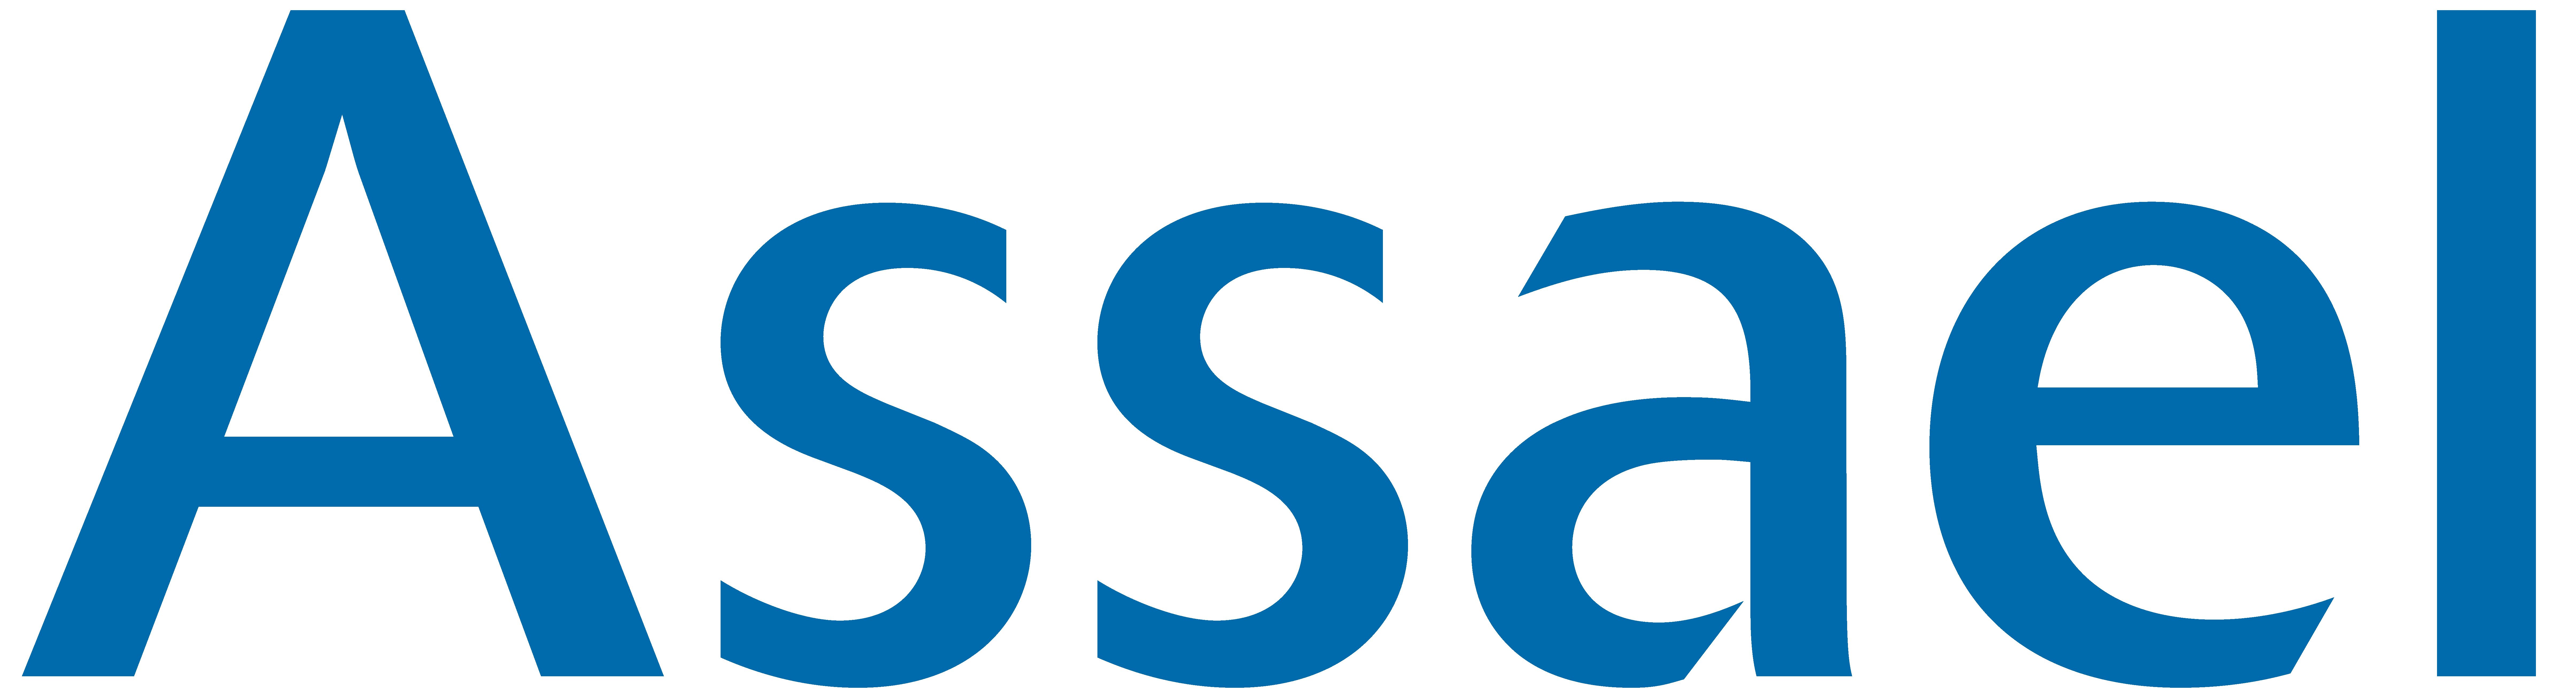 ASSAEL-Logo.jpg